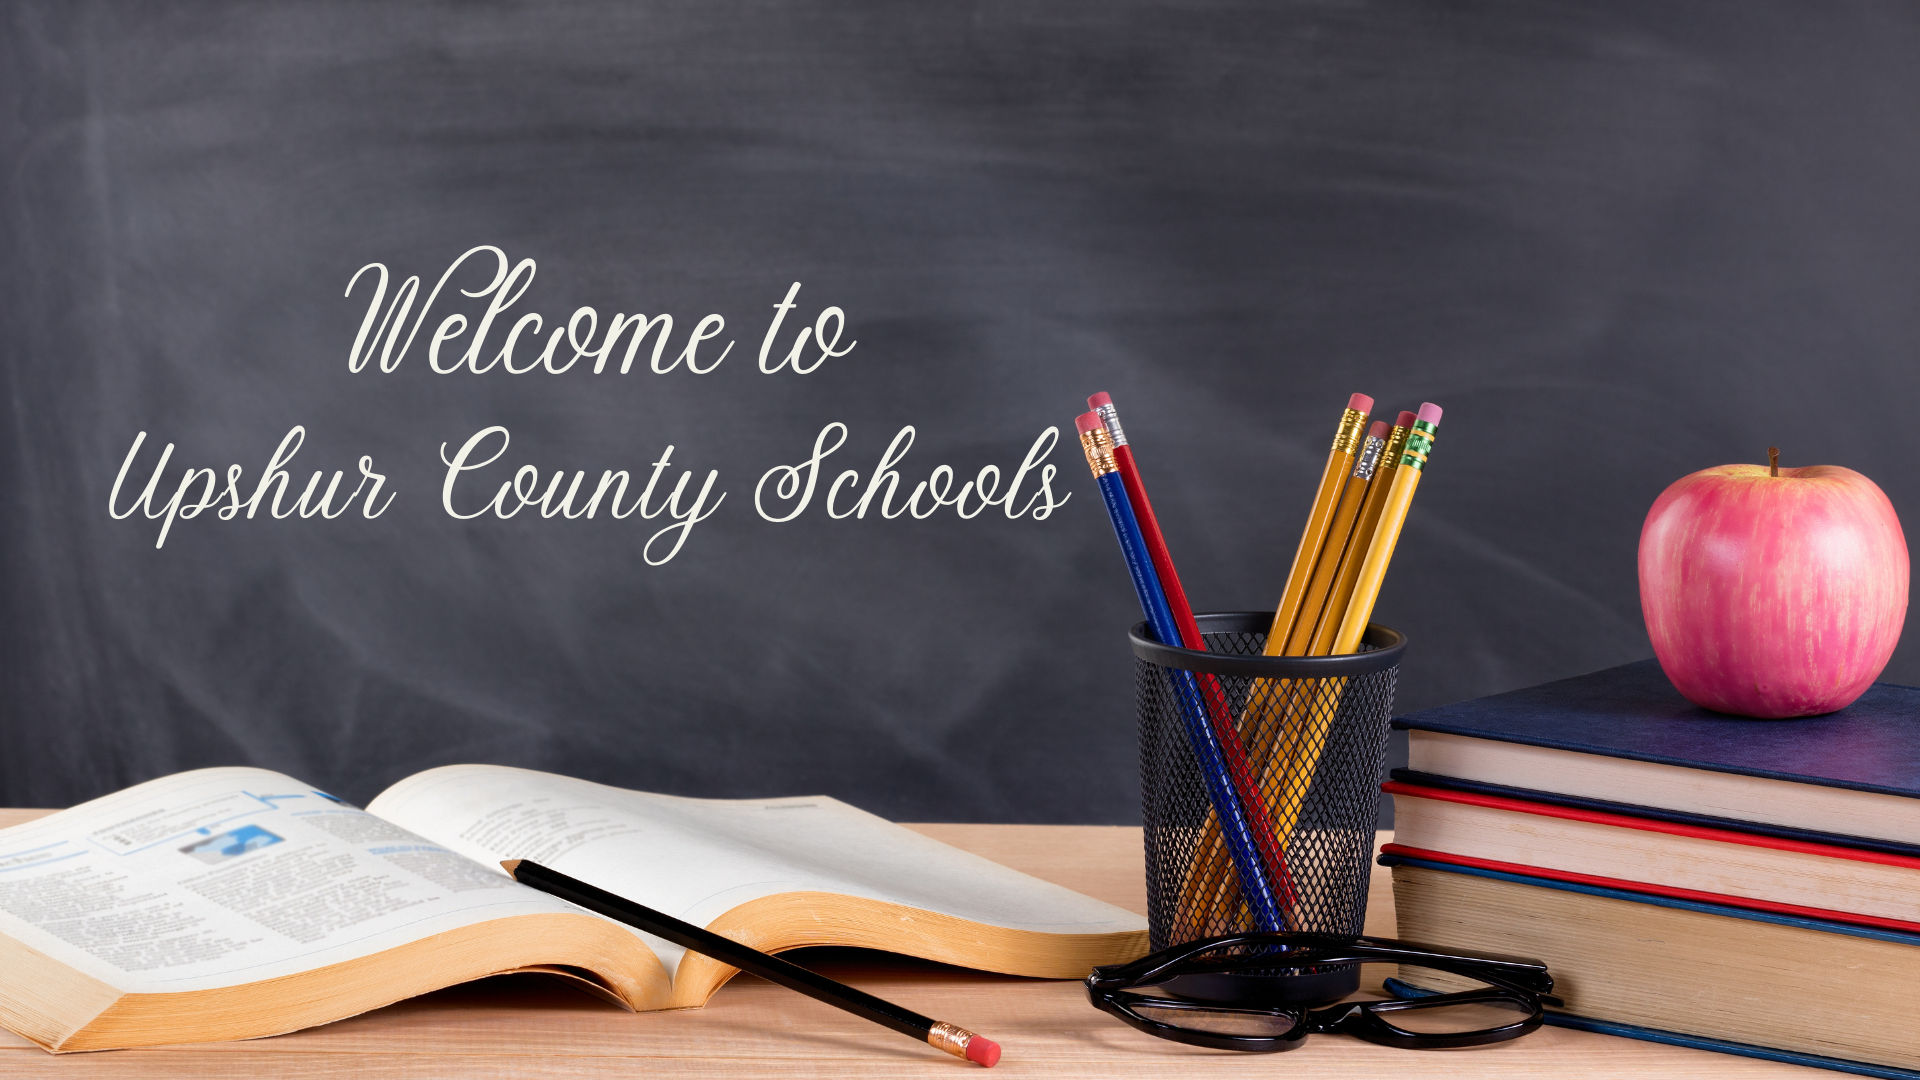 Upshur County Schools Welcome